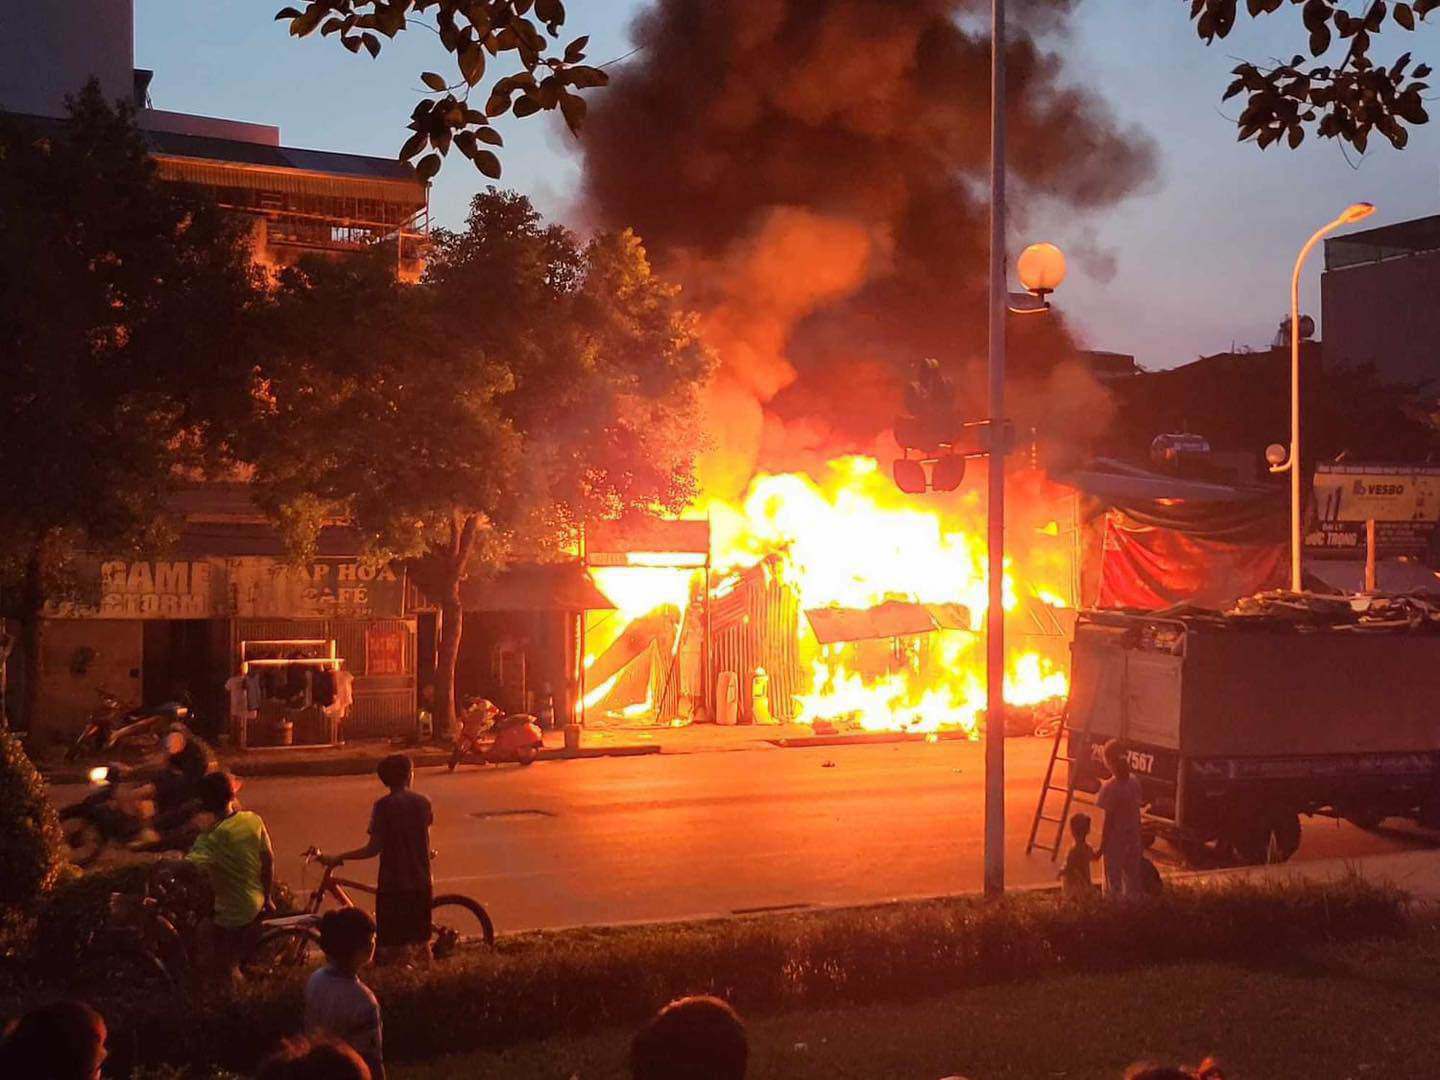 Vào khoảng 17h40 ngày 26/10, cảnh sát nhận được tin báo từ người dân về việc tại một ngôi nhà cấp 4 ở đường mới Hồng Hà, gần chung cư Hồng Hà (xã Tứ Hiệp, huyện Thanh Trì, Hà Nội) xảy ra hỏa hoạn.